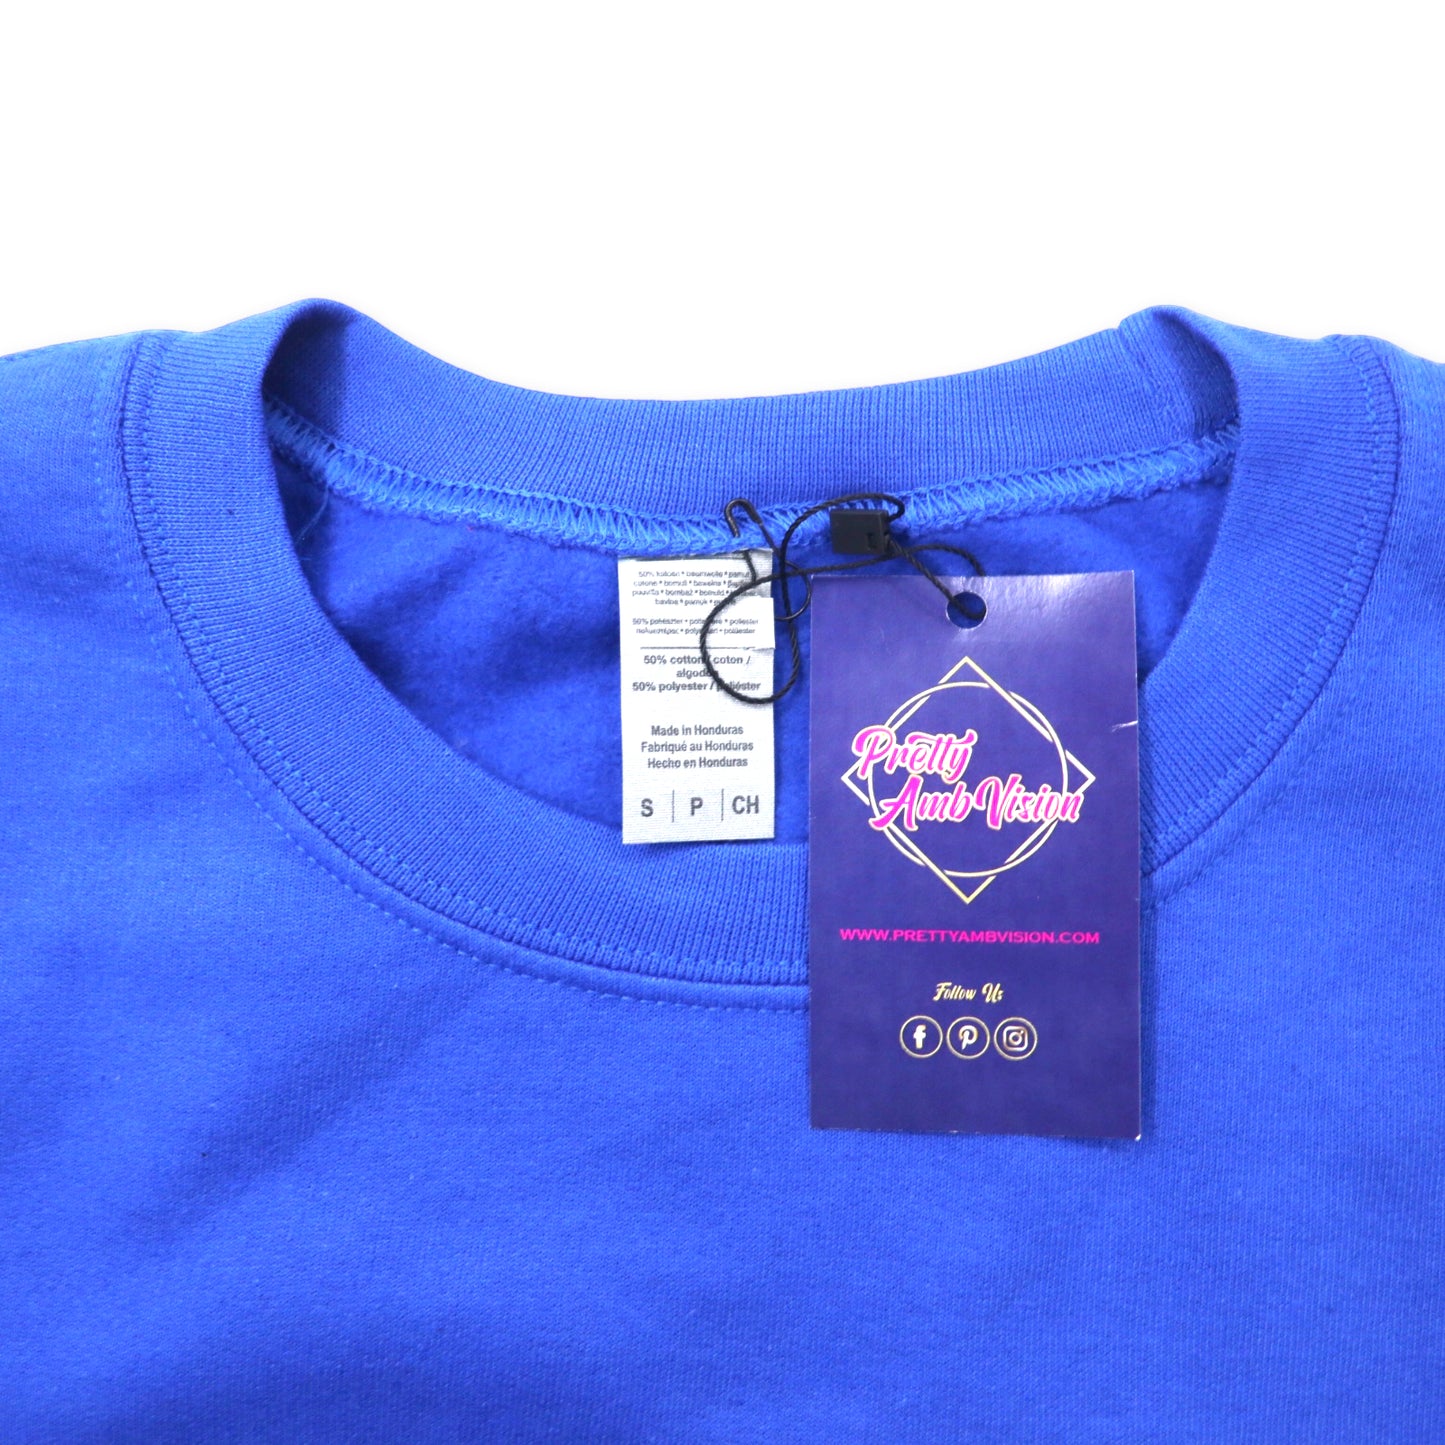 College Print Sweat shirt カレッジプリント スウェット S ブルー コットン 裏起毛 HAMPTON ホンジュラス製 未使用品